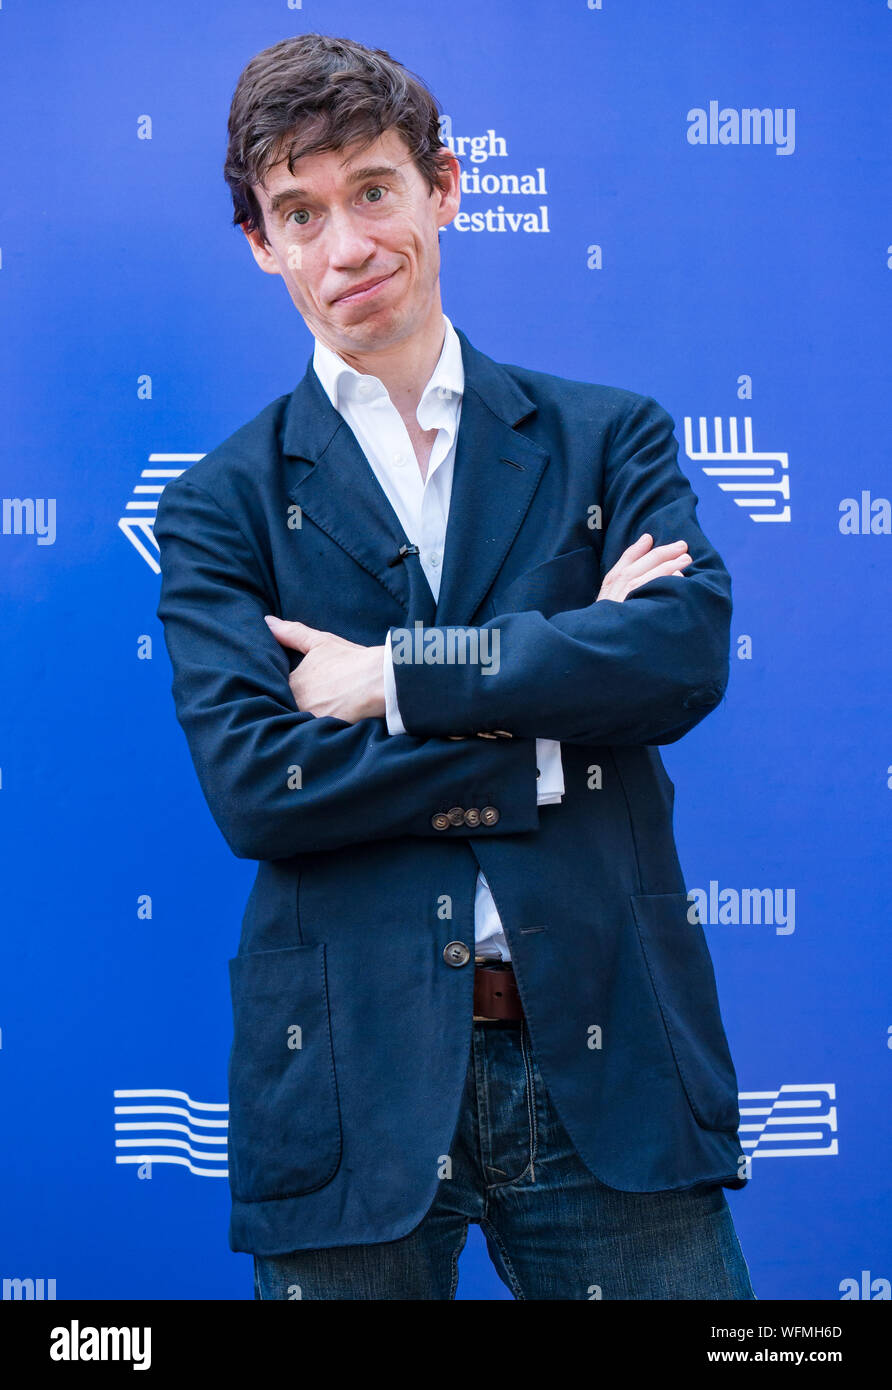 Rory Stewart, político de la parte conservadora y diputado, en el Festival Internacional del Libro de Edimburgo 2019, Escocia, Reino Unido Foto de stock